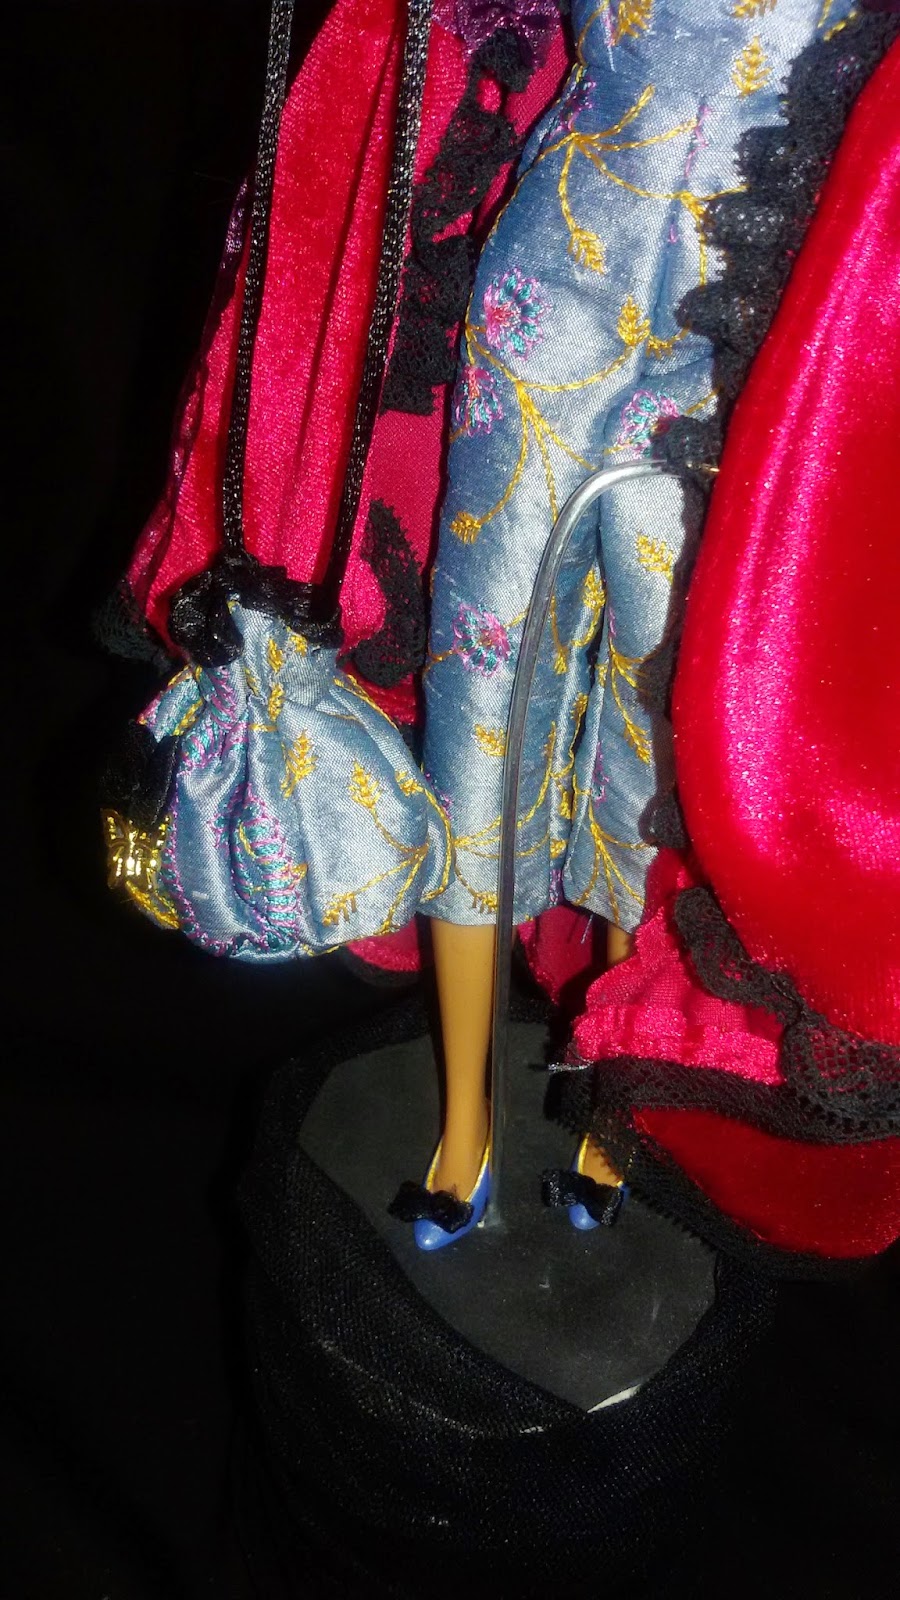 II Concurso de vestidos para Barbie (LP, Personal Shoppers)